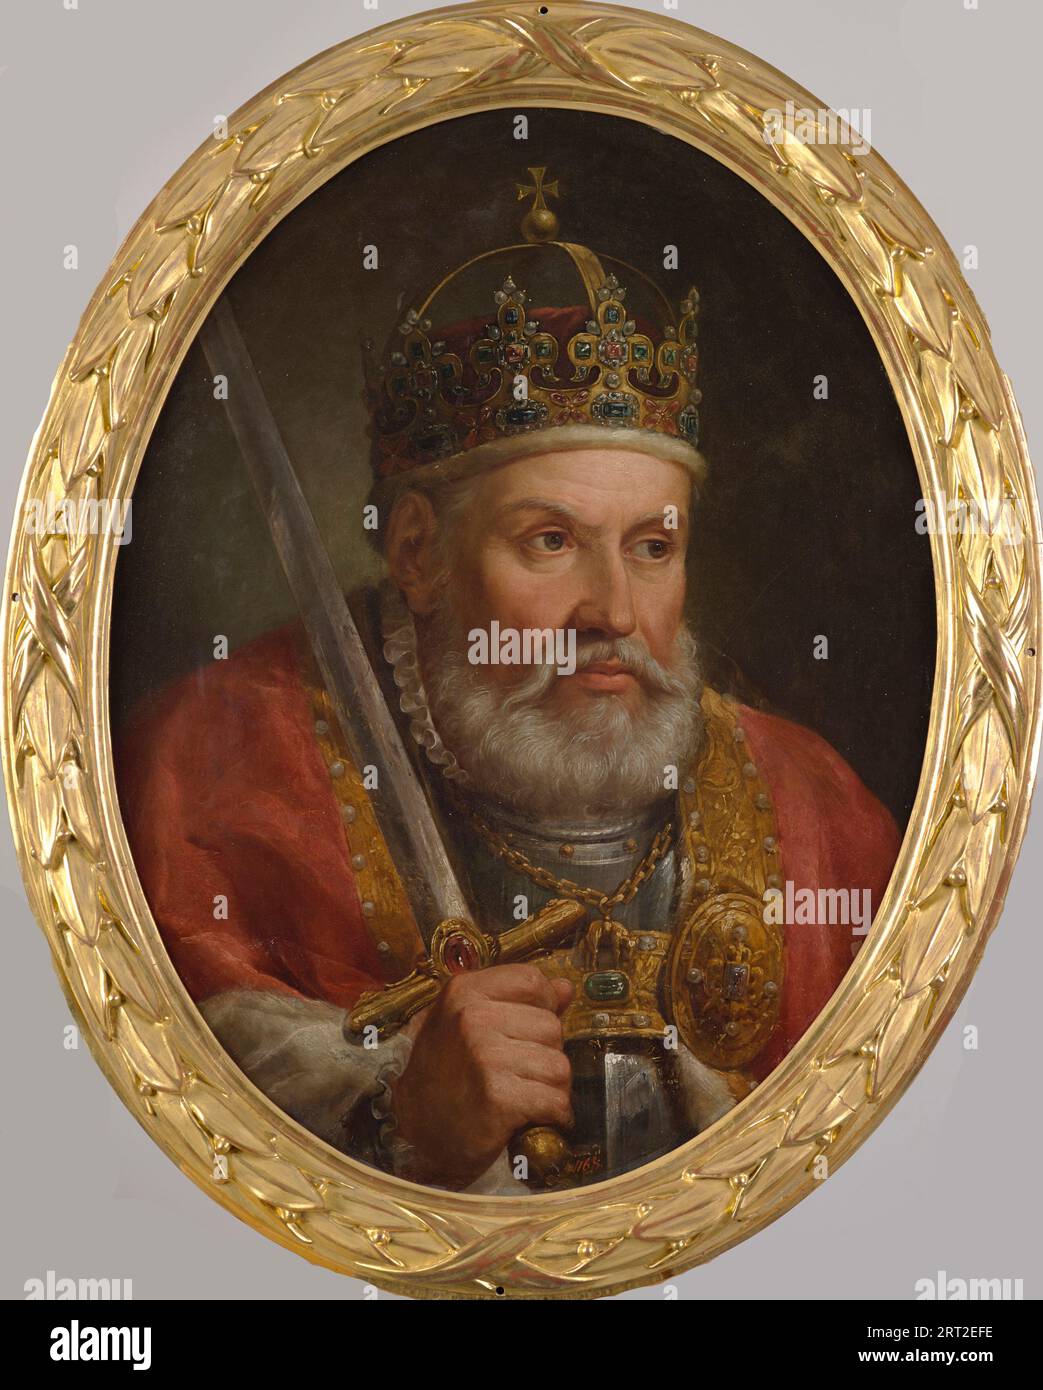 Ritratto di Sigismondo i di Polonia (1467-1548), 1768-1771. Trovato nella collezione del Castello reale, Varsavia. Foto Stock